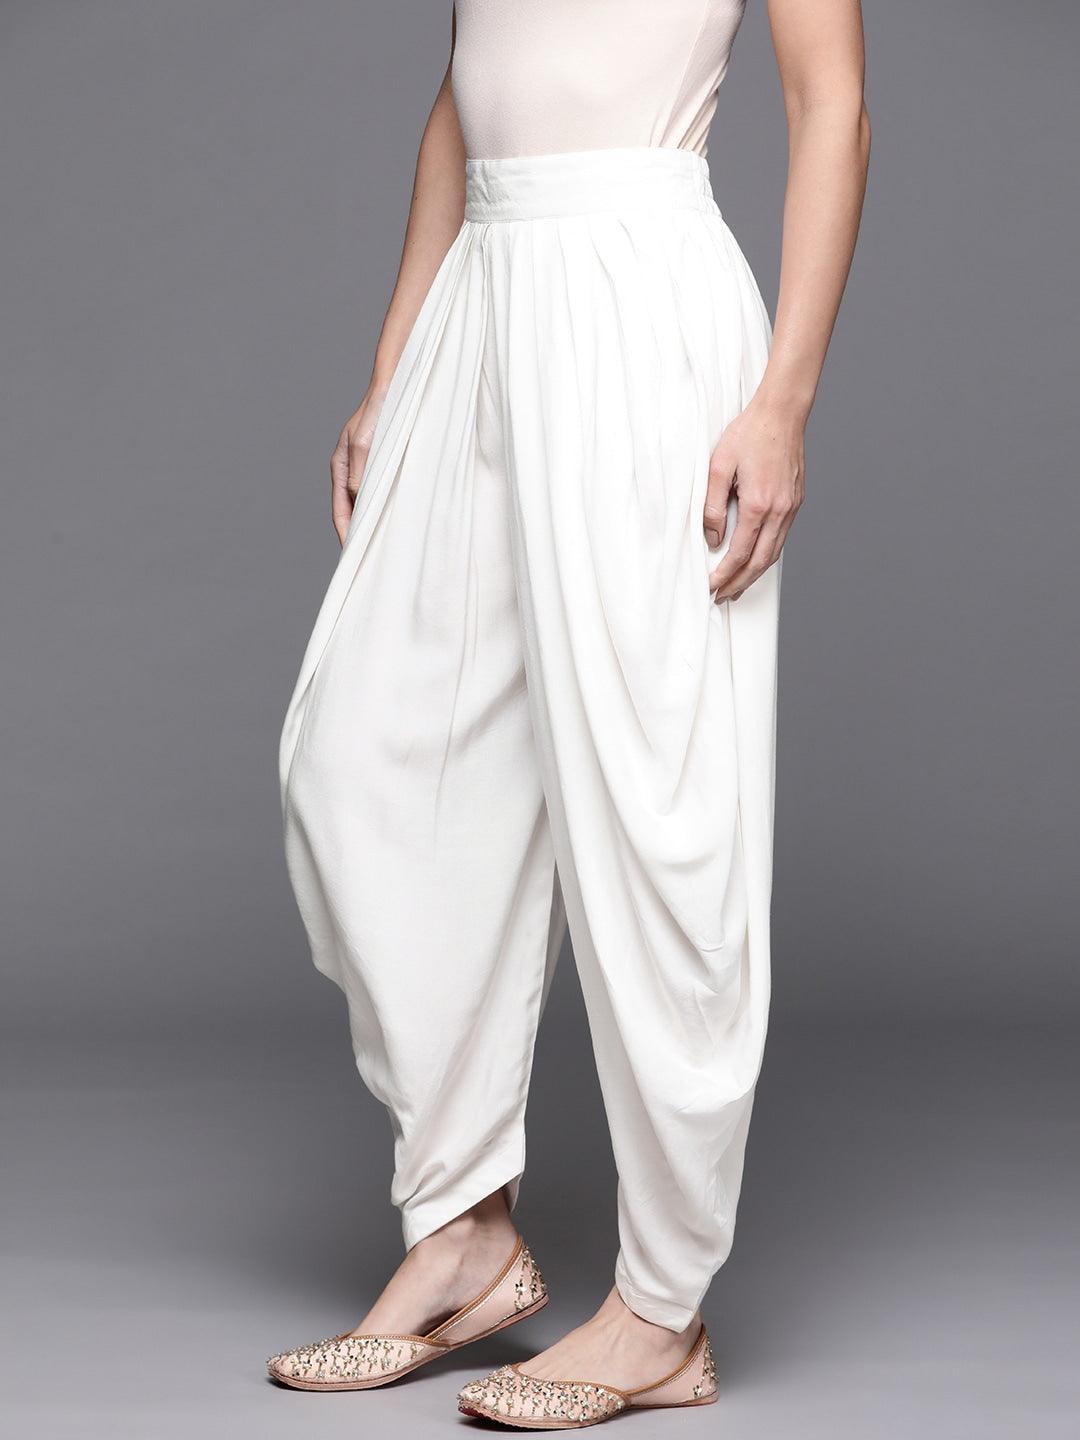 White Solid Rayon Salwar Pants - Libas